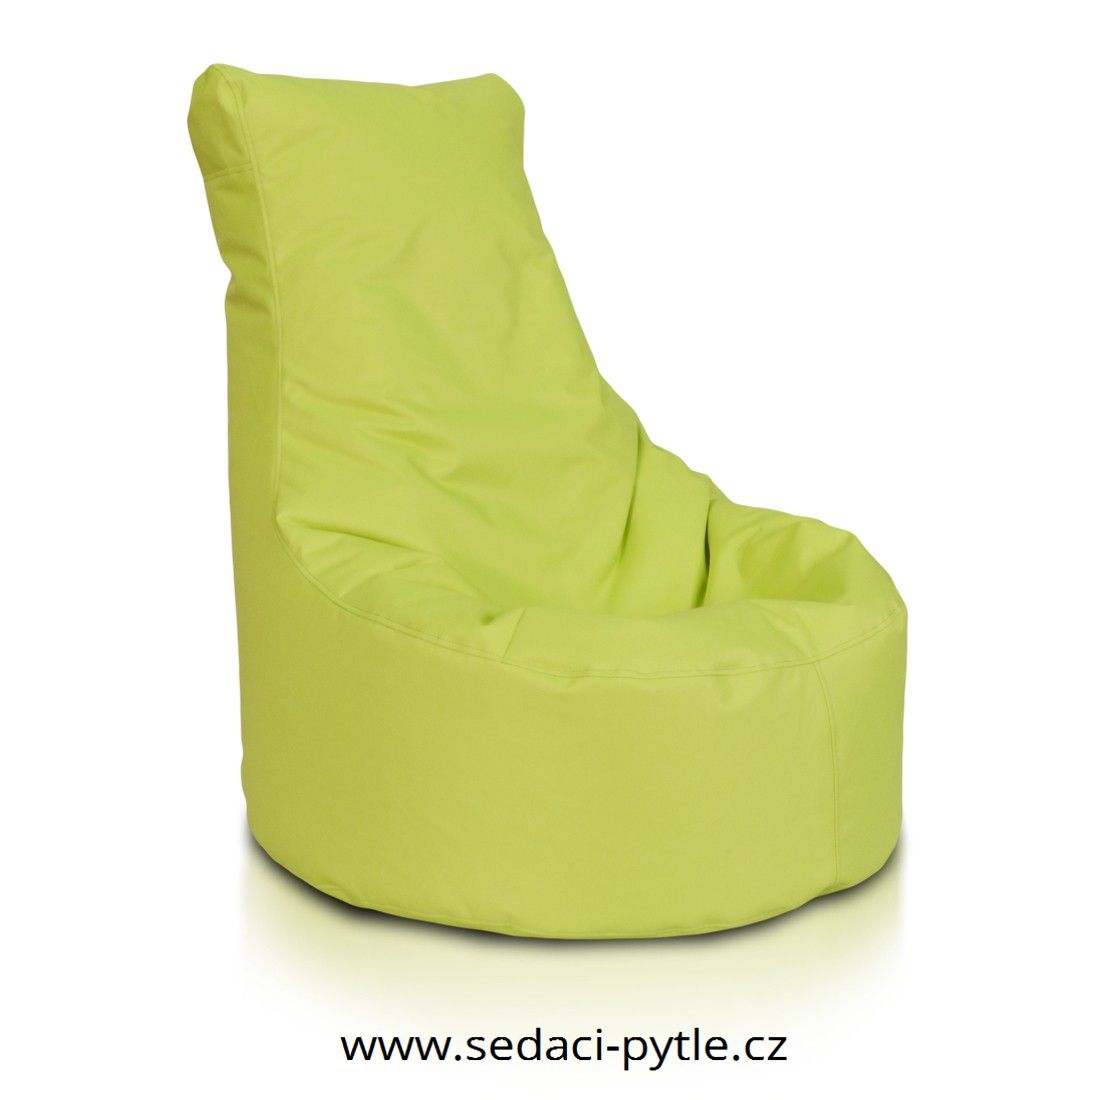 Primabag Seat polyester NC limetka - Sedaci-Pytle.cz